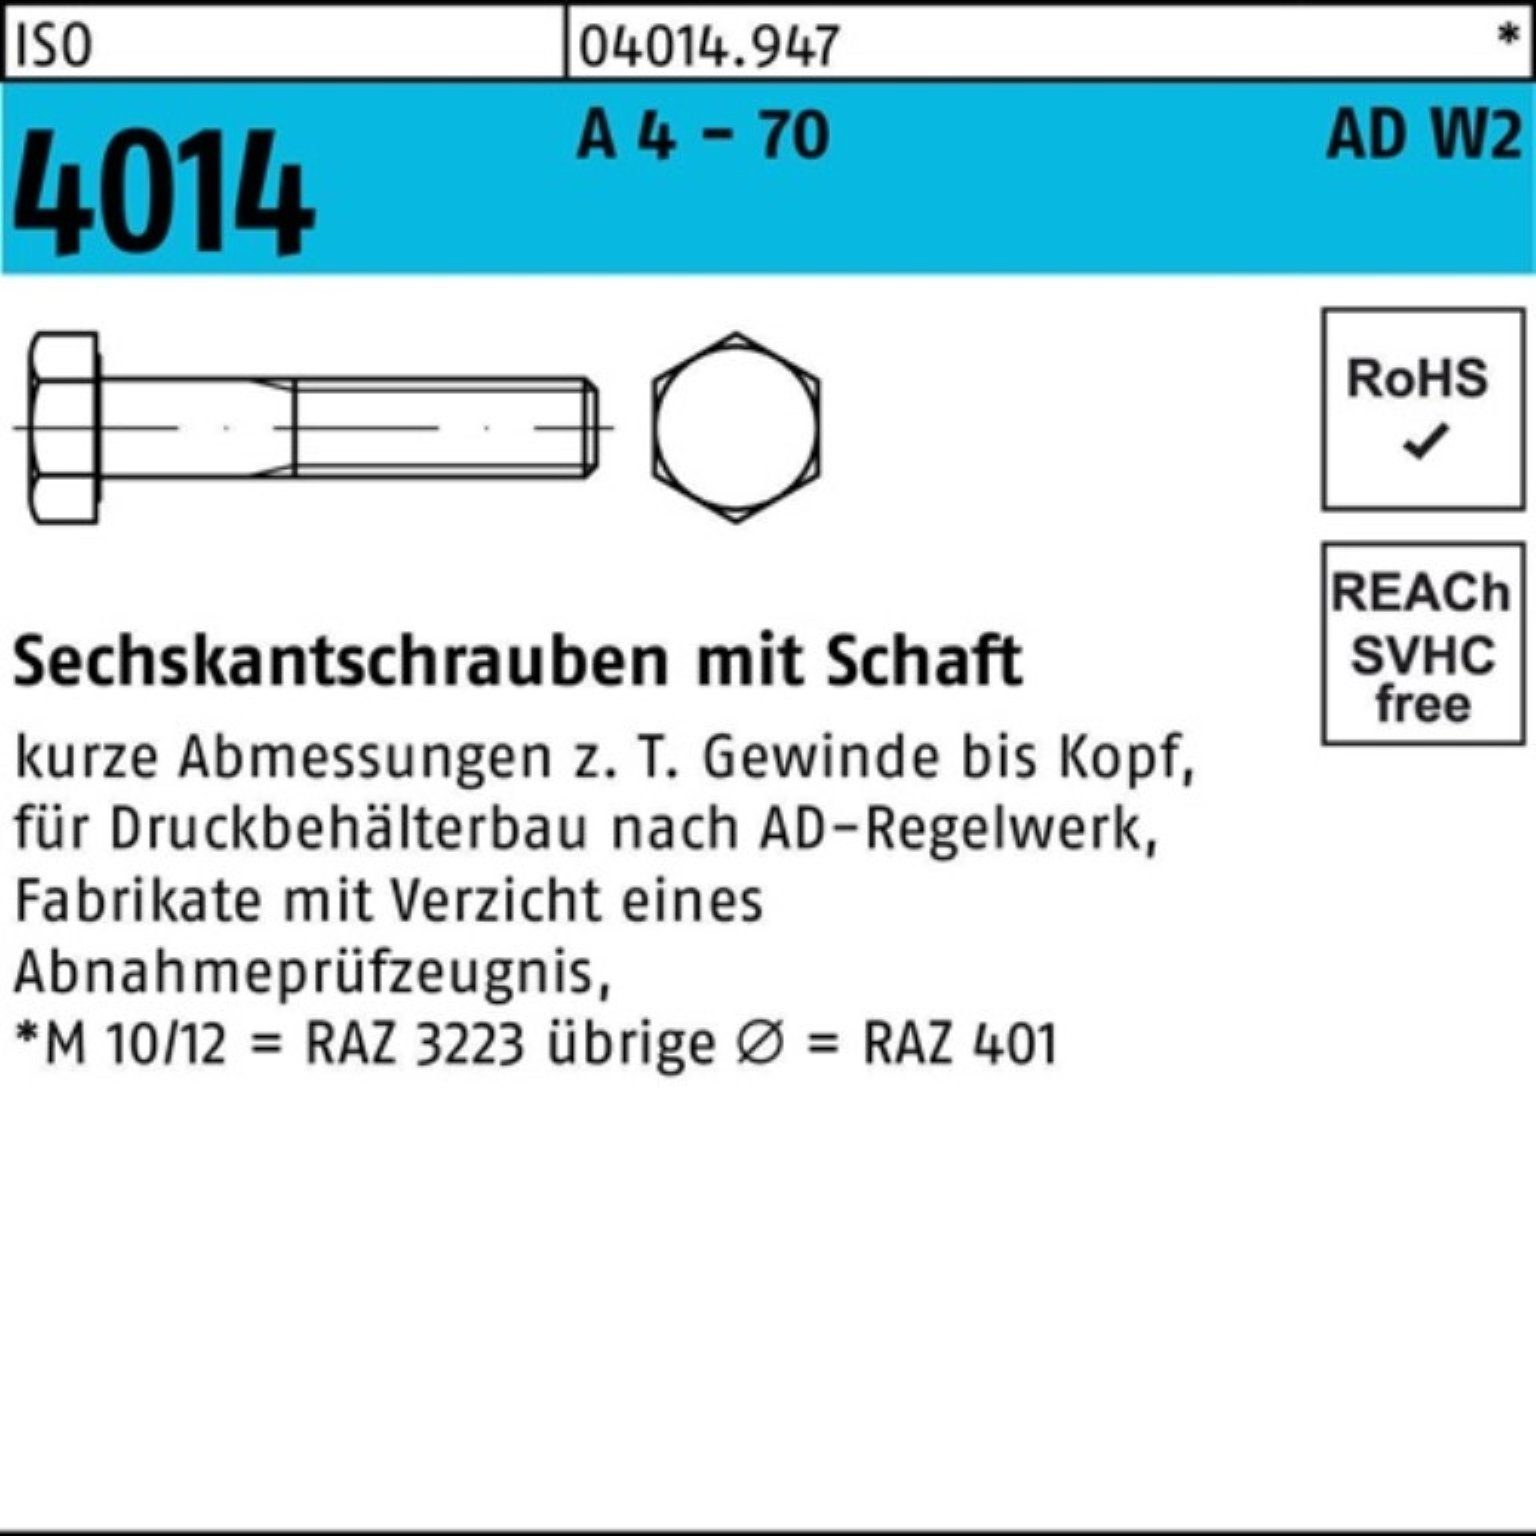 4 ISO Bufab Sechskantschraube Schaft Sechskantschraube 70 M12x 70 50 Pack - A 100er 4014 AD-W2